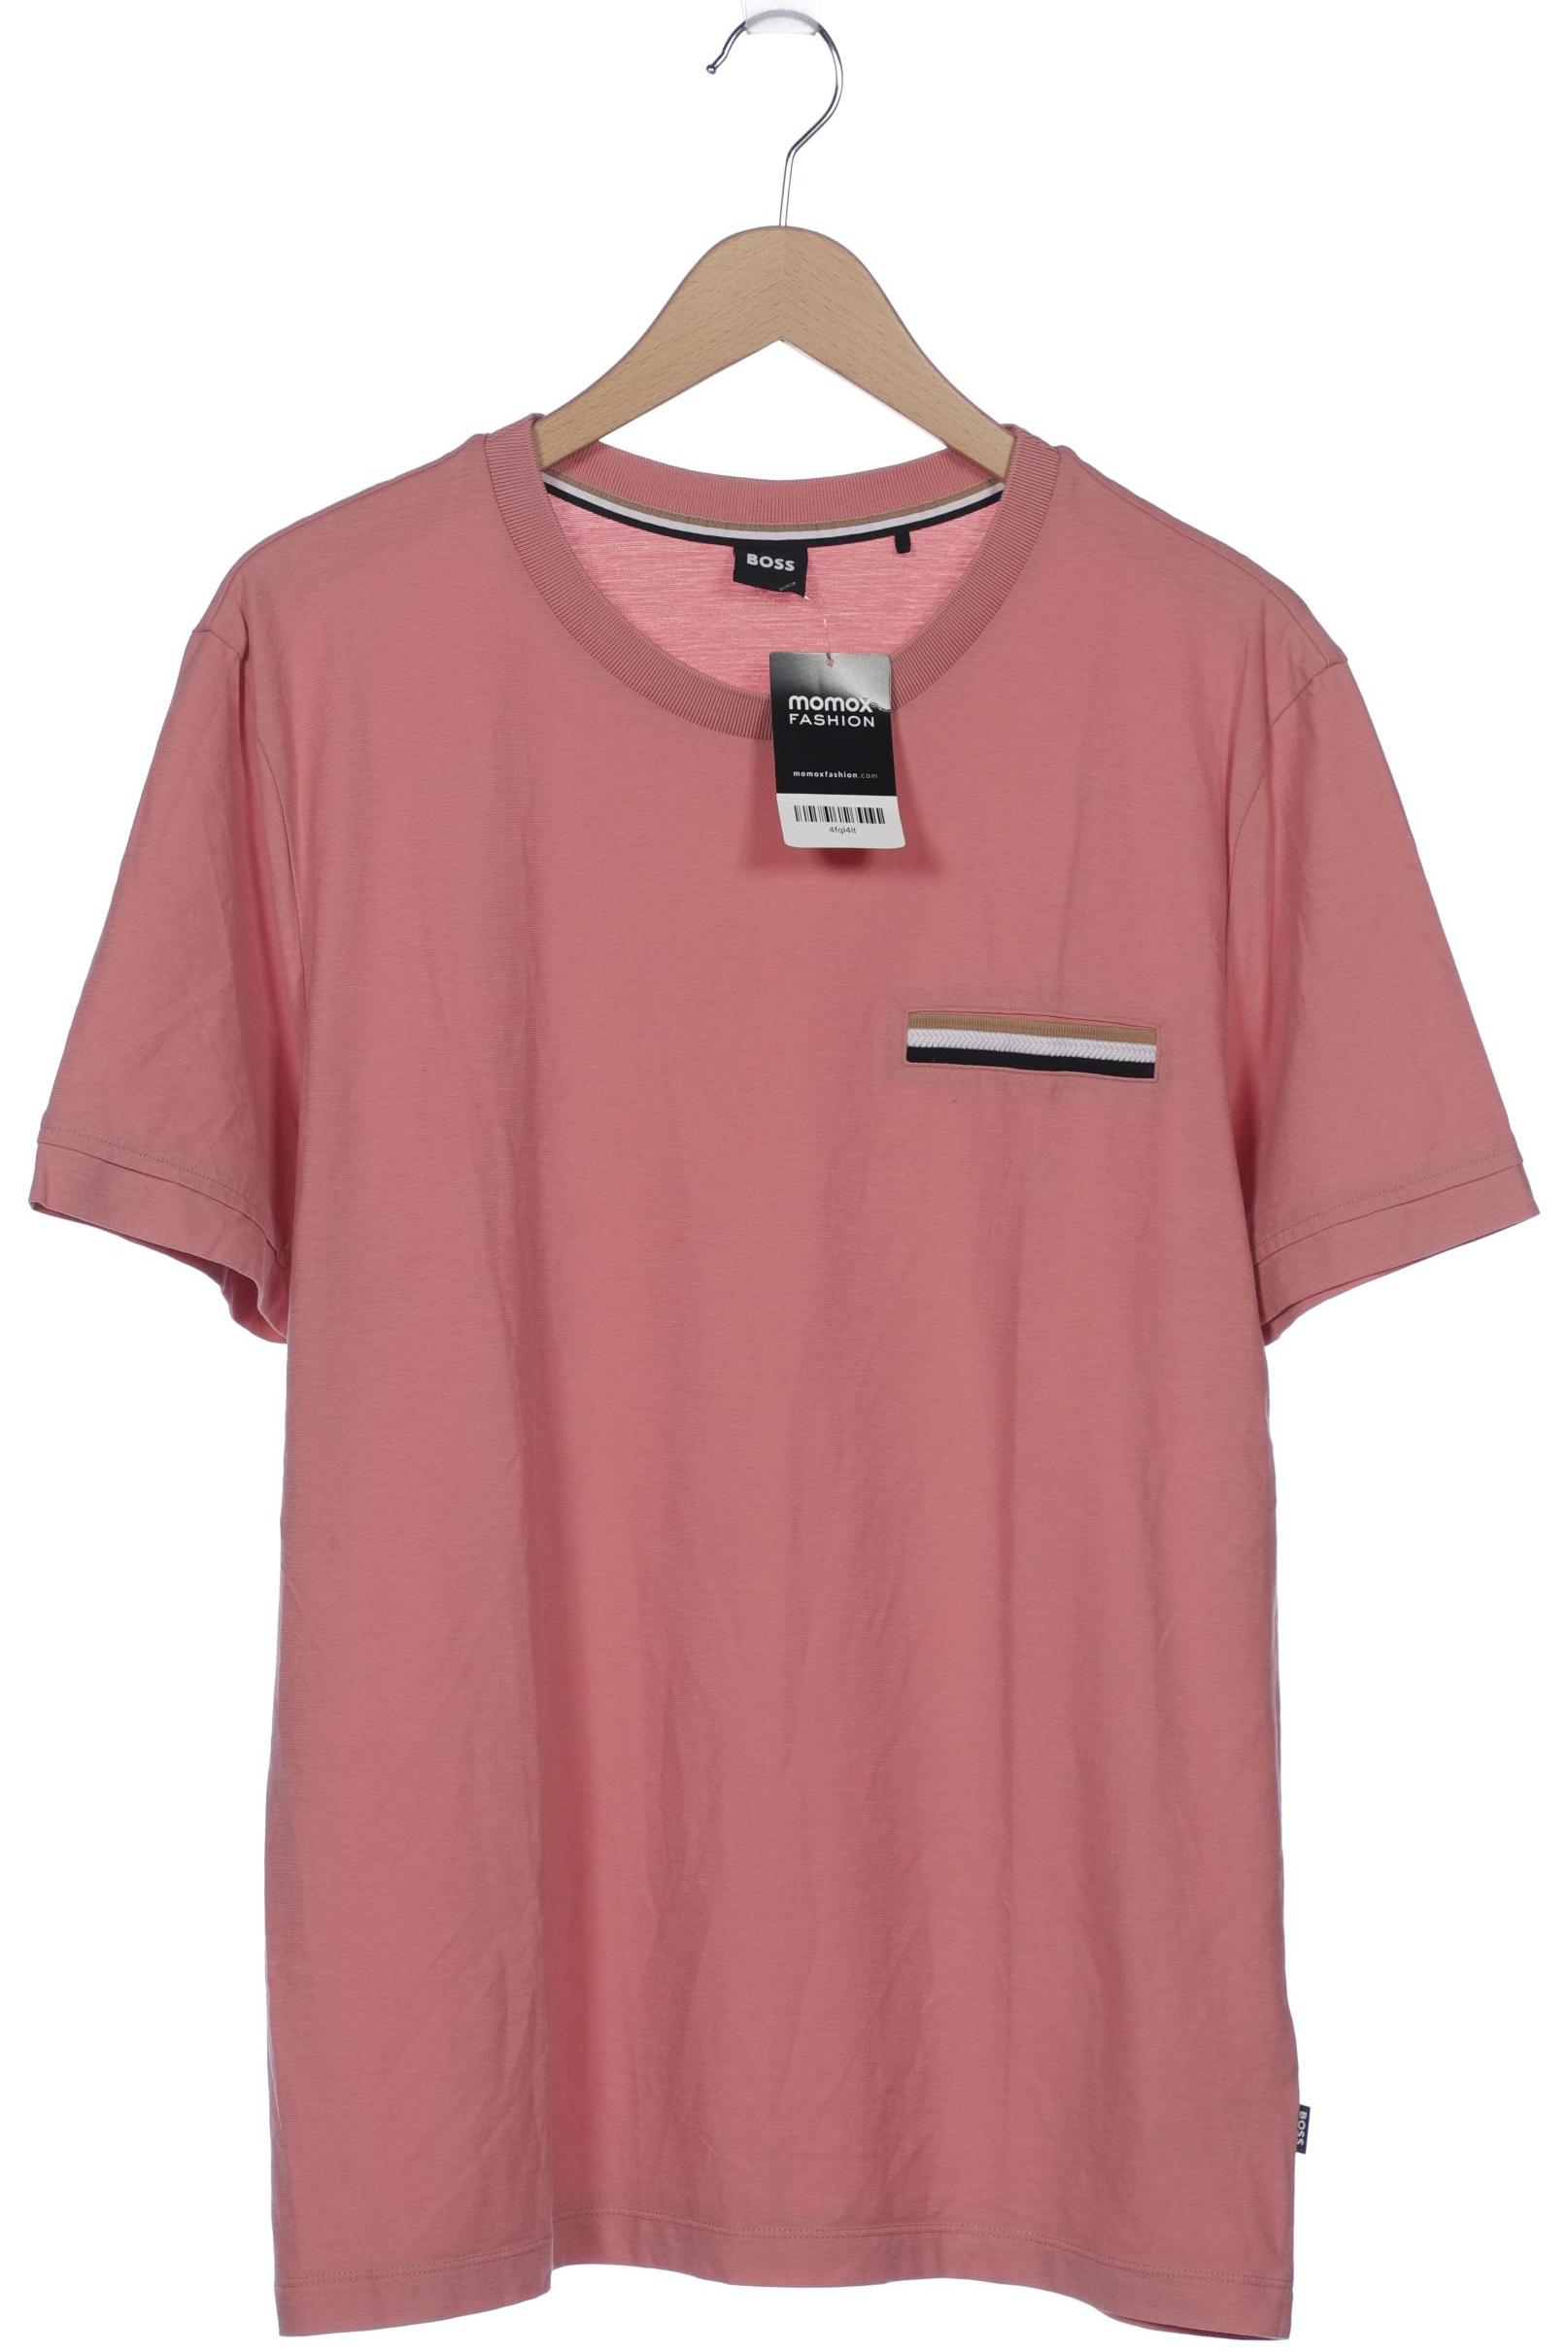 BOSS by Hugo Boss Herren T-Shirt, pink von BOSS by Hugo Boss